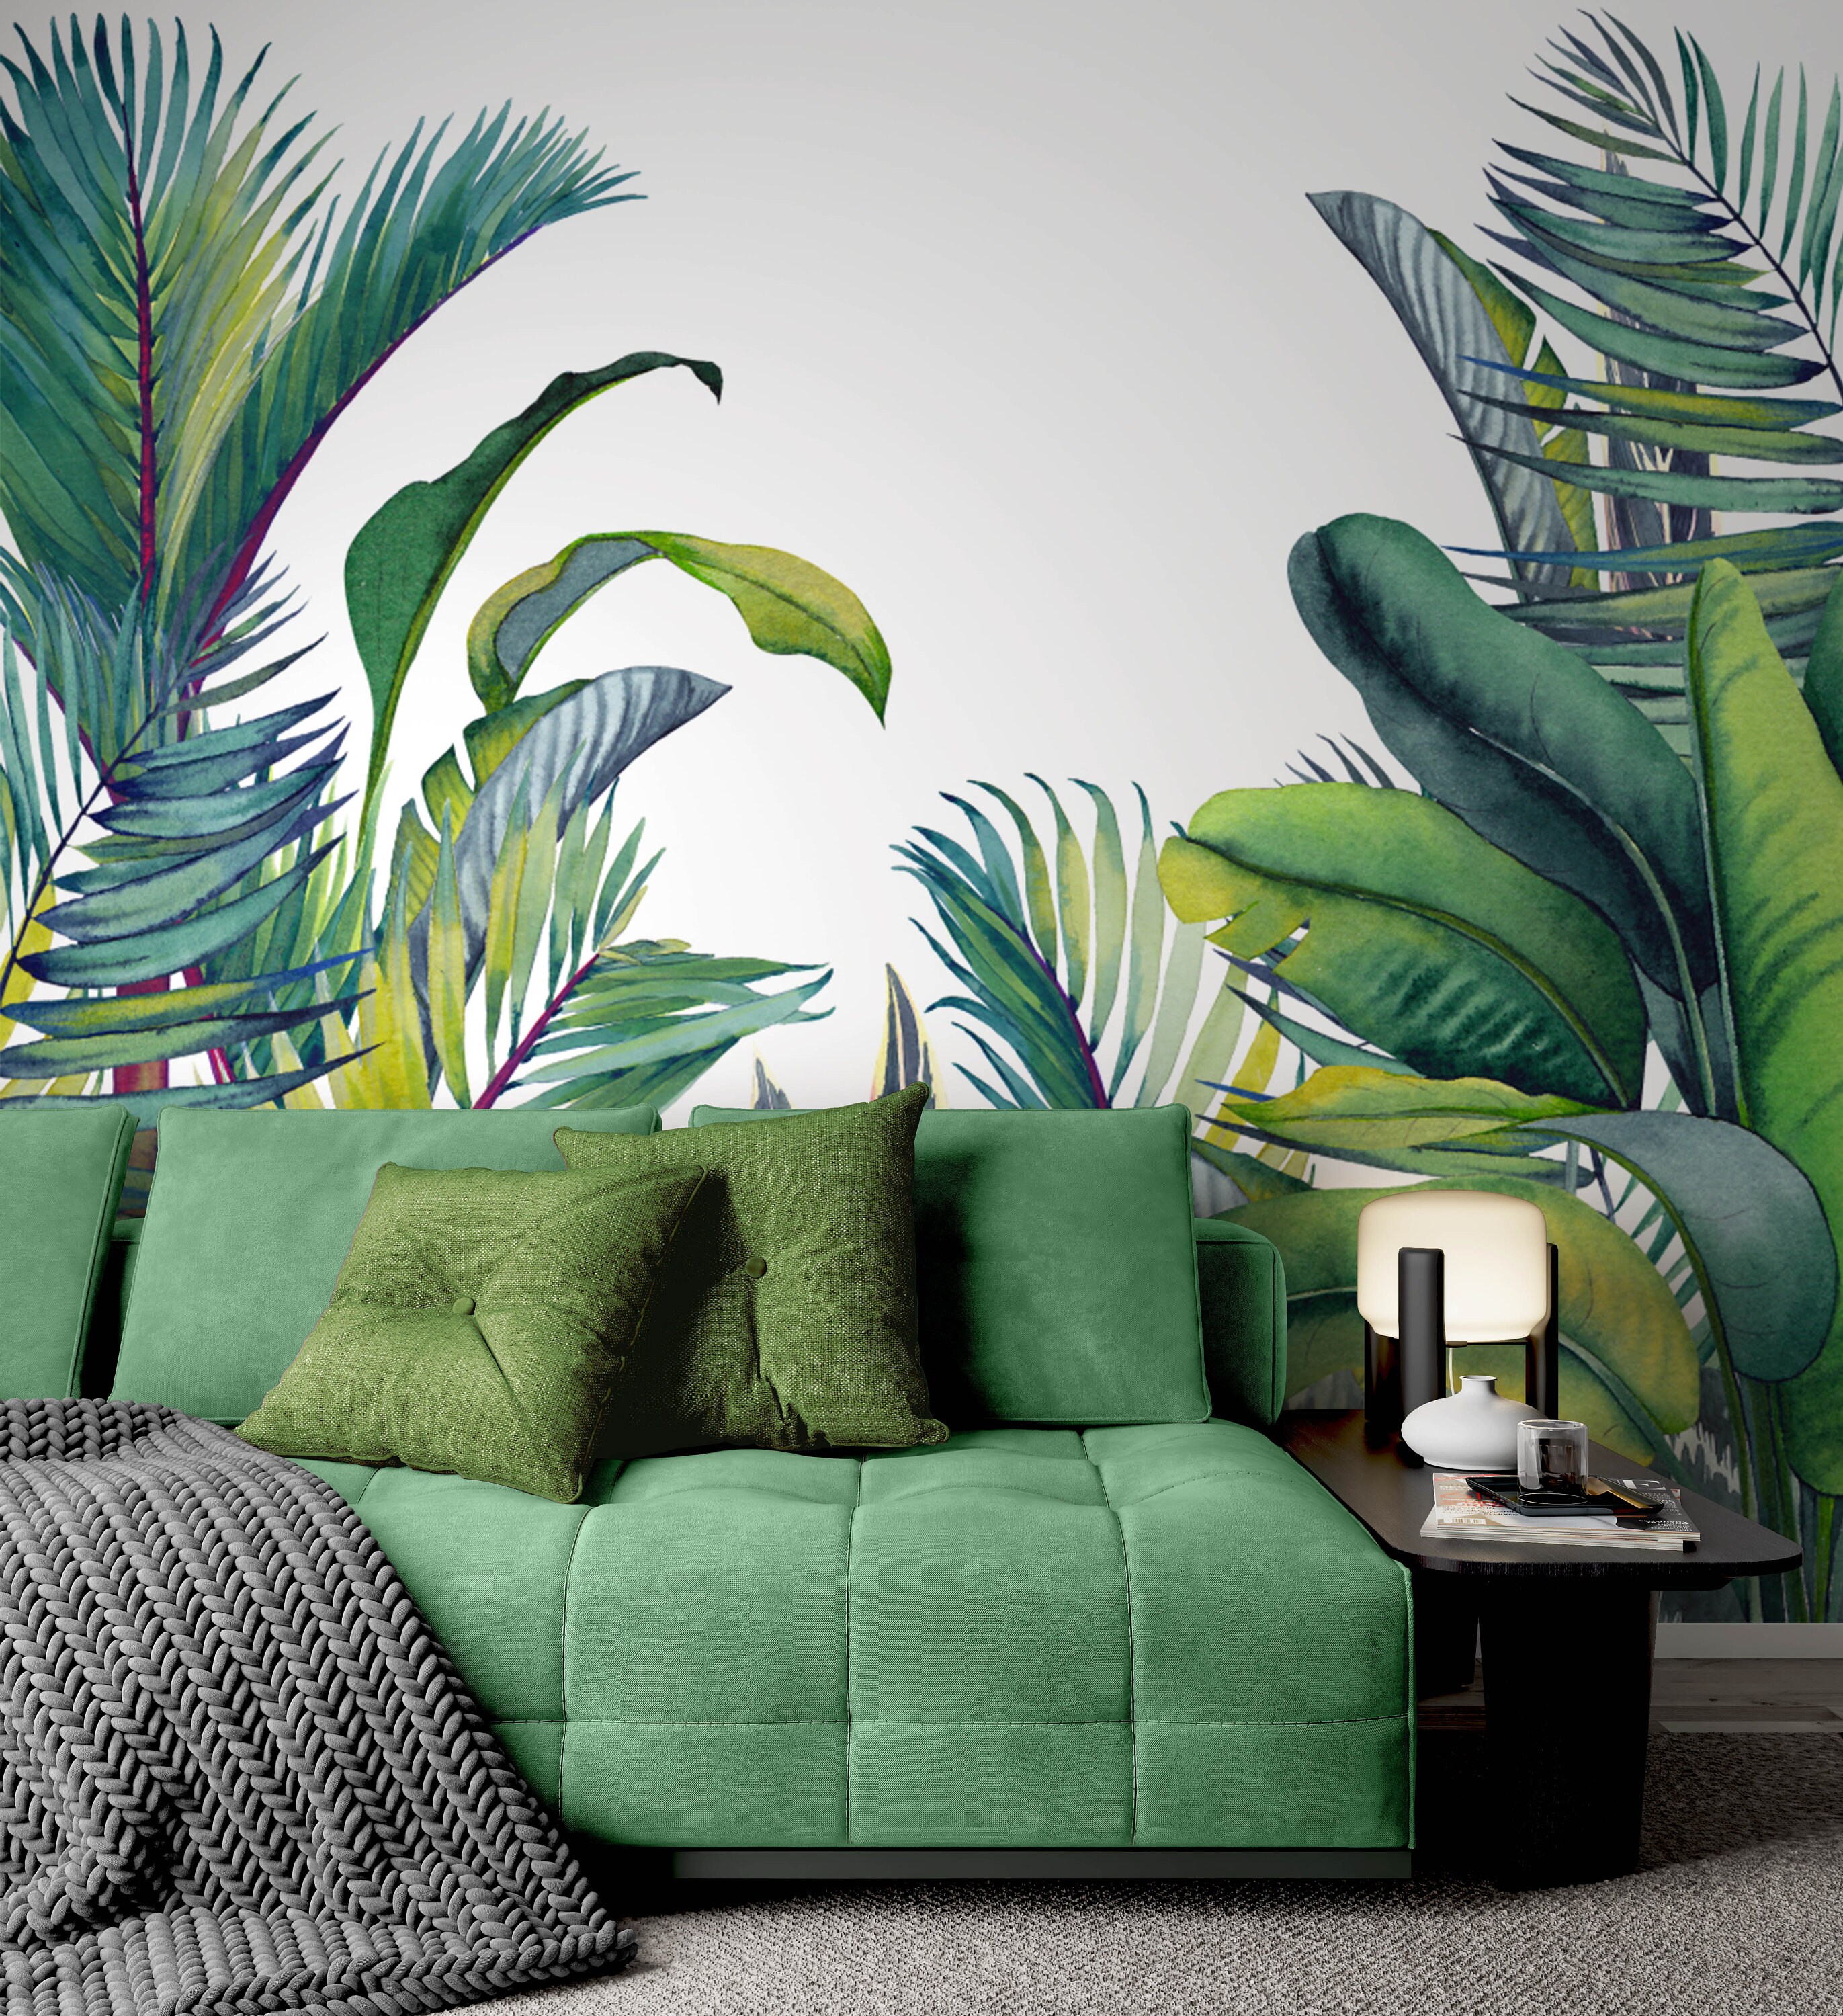 Vinilo decorativo para sala de pared, diseño de palmeras tropicales AS1621